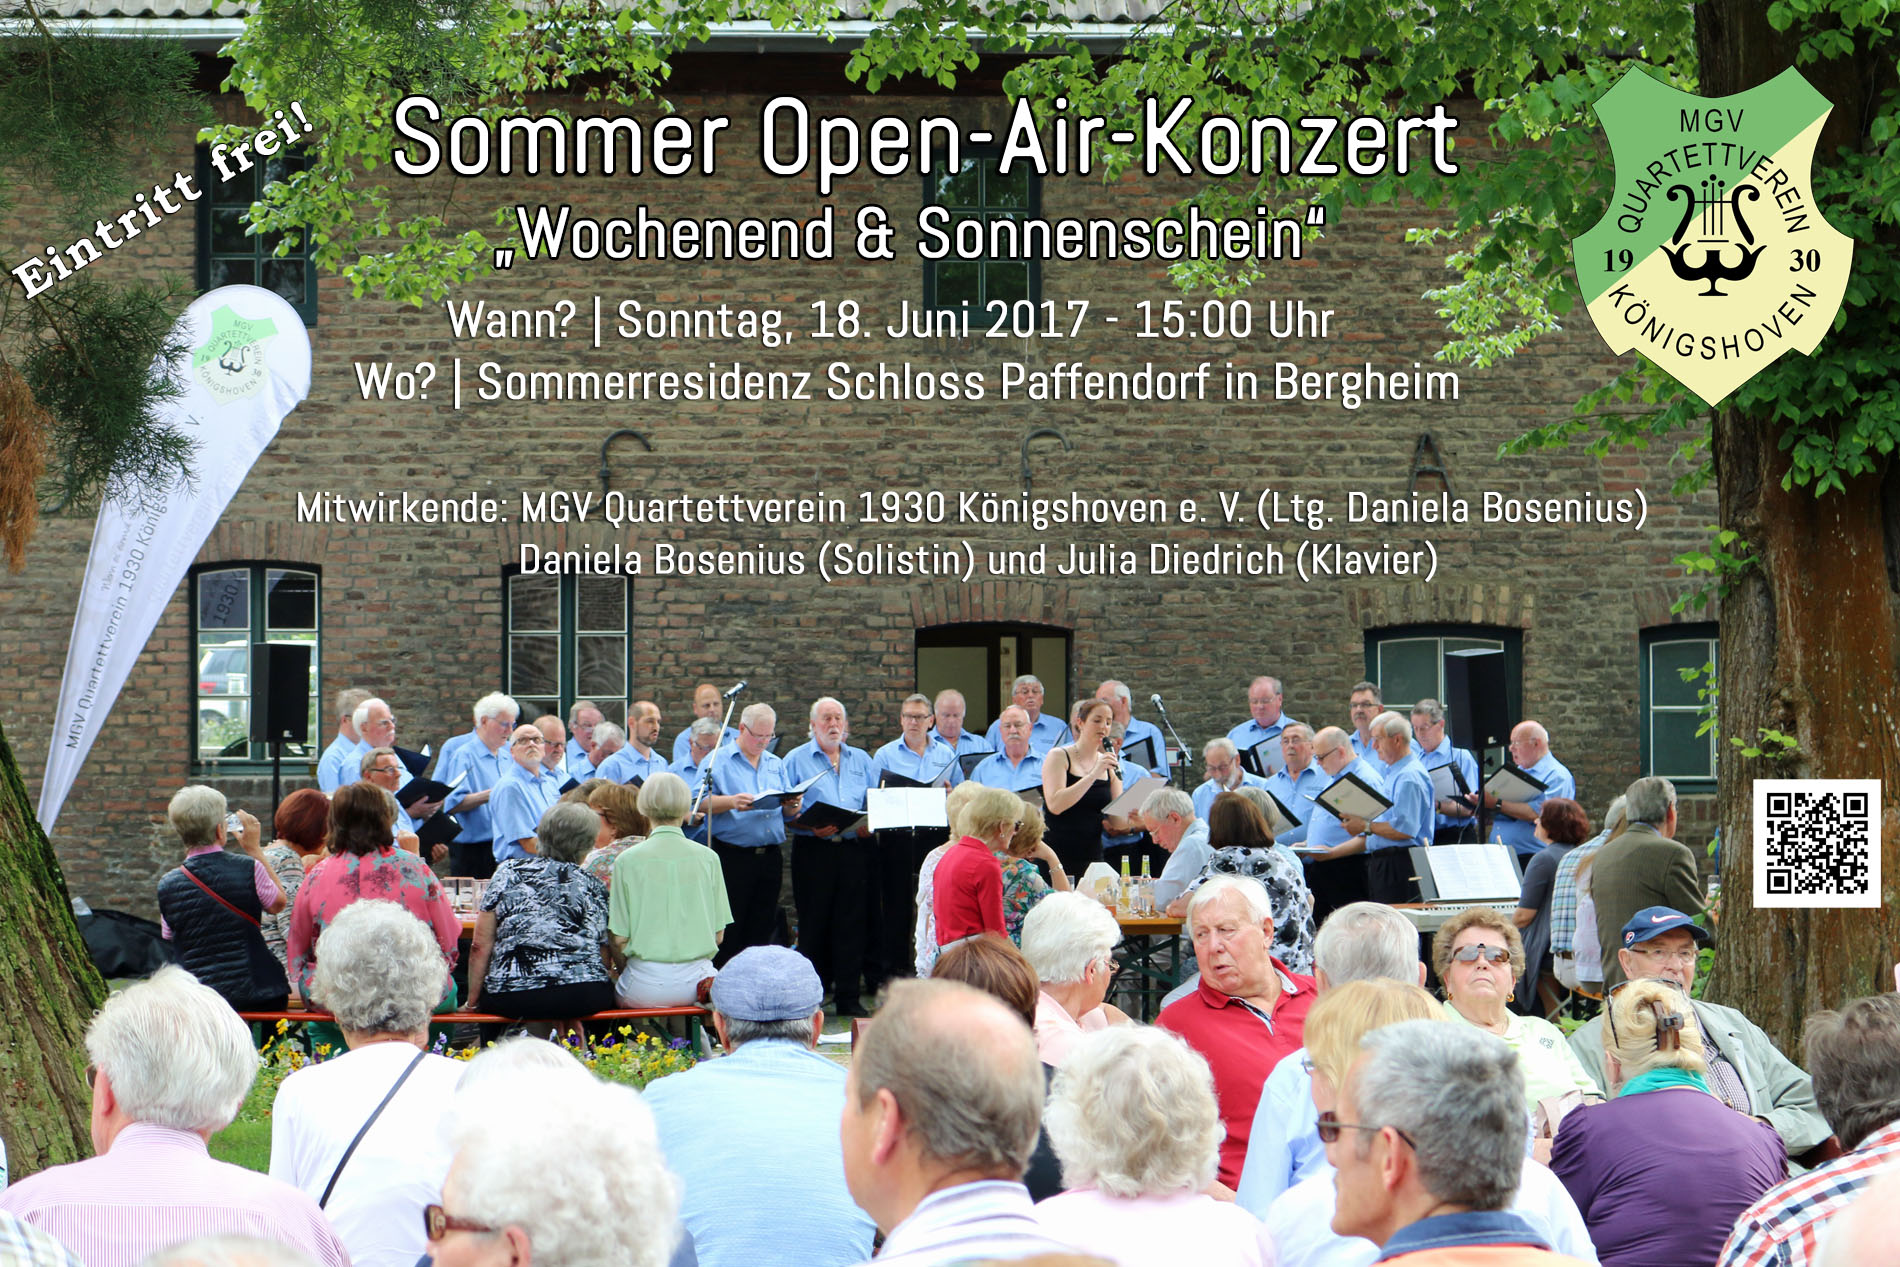 Auch in diesem Jahr präsentiert der MGV Quartettverein 1930 Königshoven e. V. mit Solodarbietungen von Chorleiterin Daniela Bosenius mit Unterstützung von Julia Diedrich am Klavier ein zweistündiges „Sommer Open-Air-Konzert“ bei freiem Eintritt. (Fotos: Bastian Schlößer)